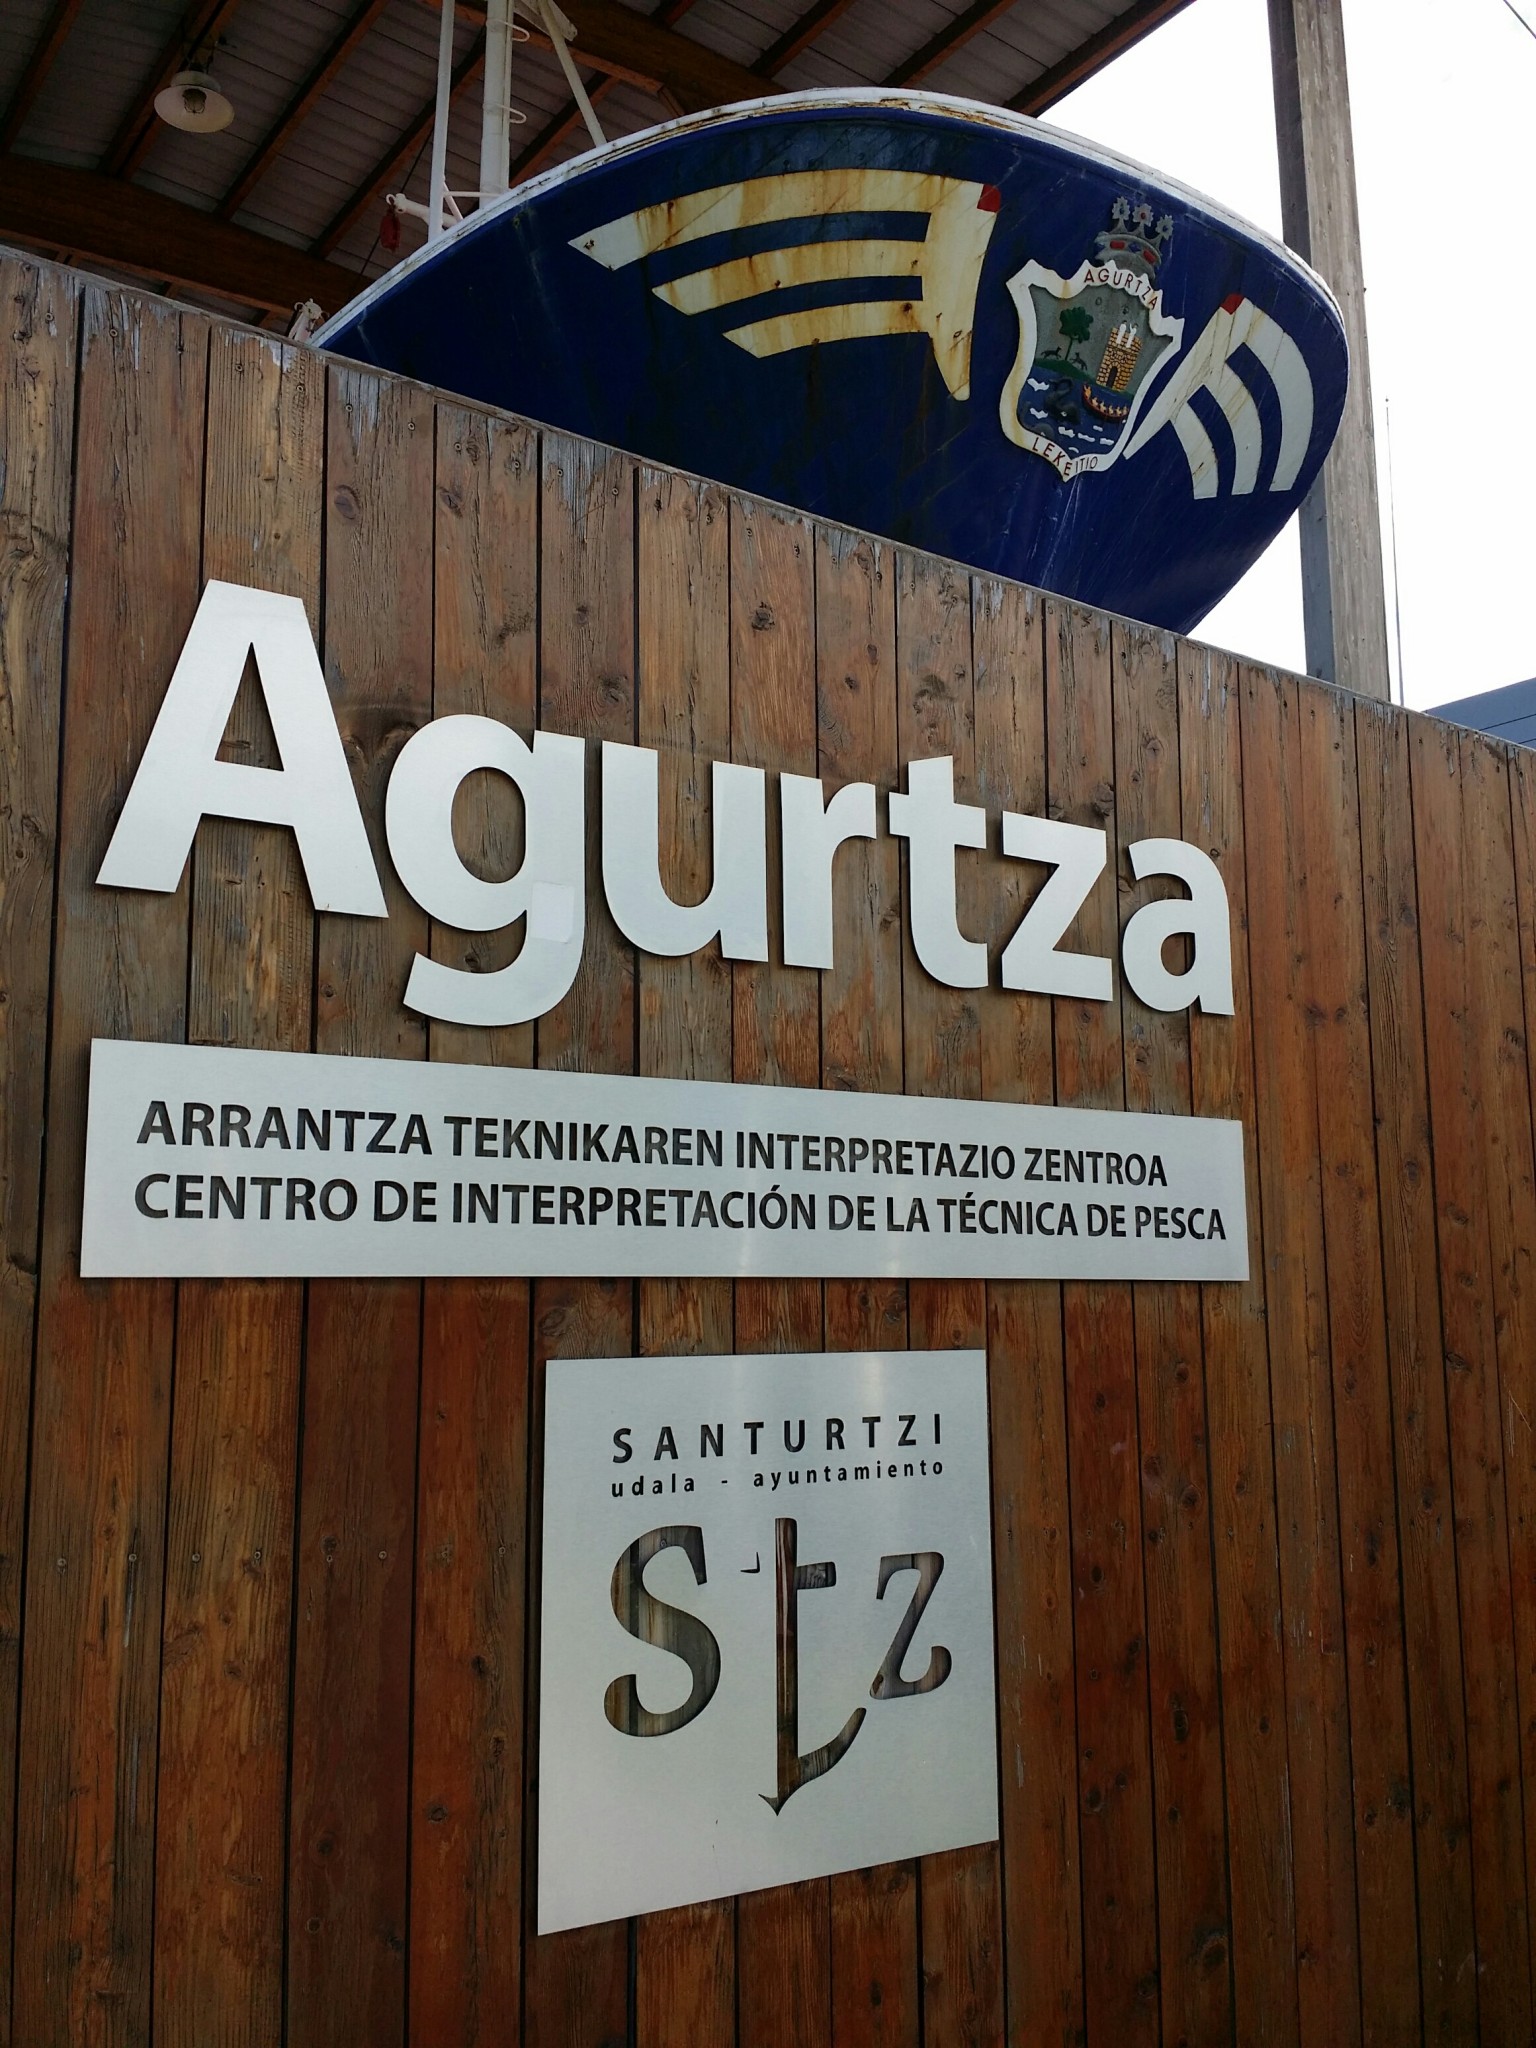 Agurtza, centro de interpretación de técnica de pesca